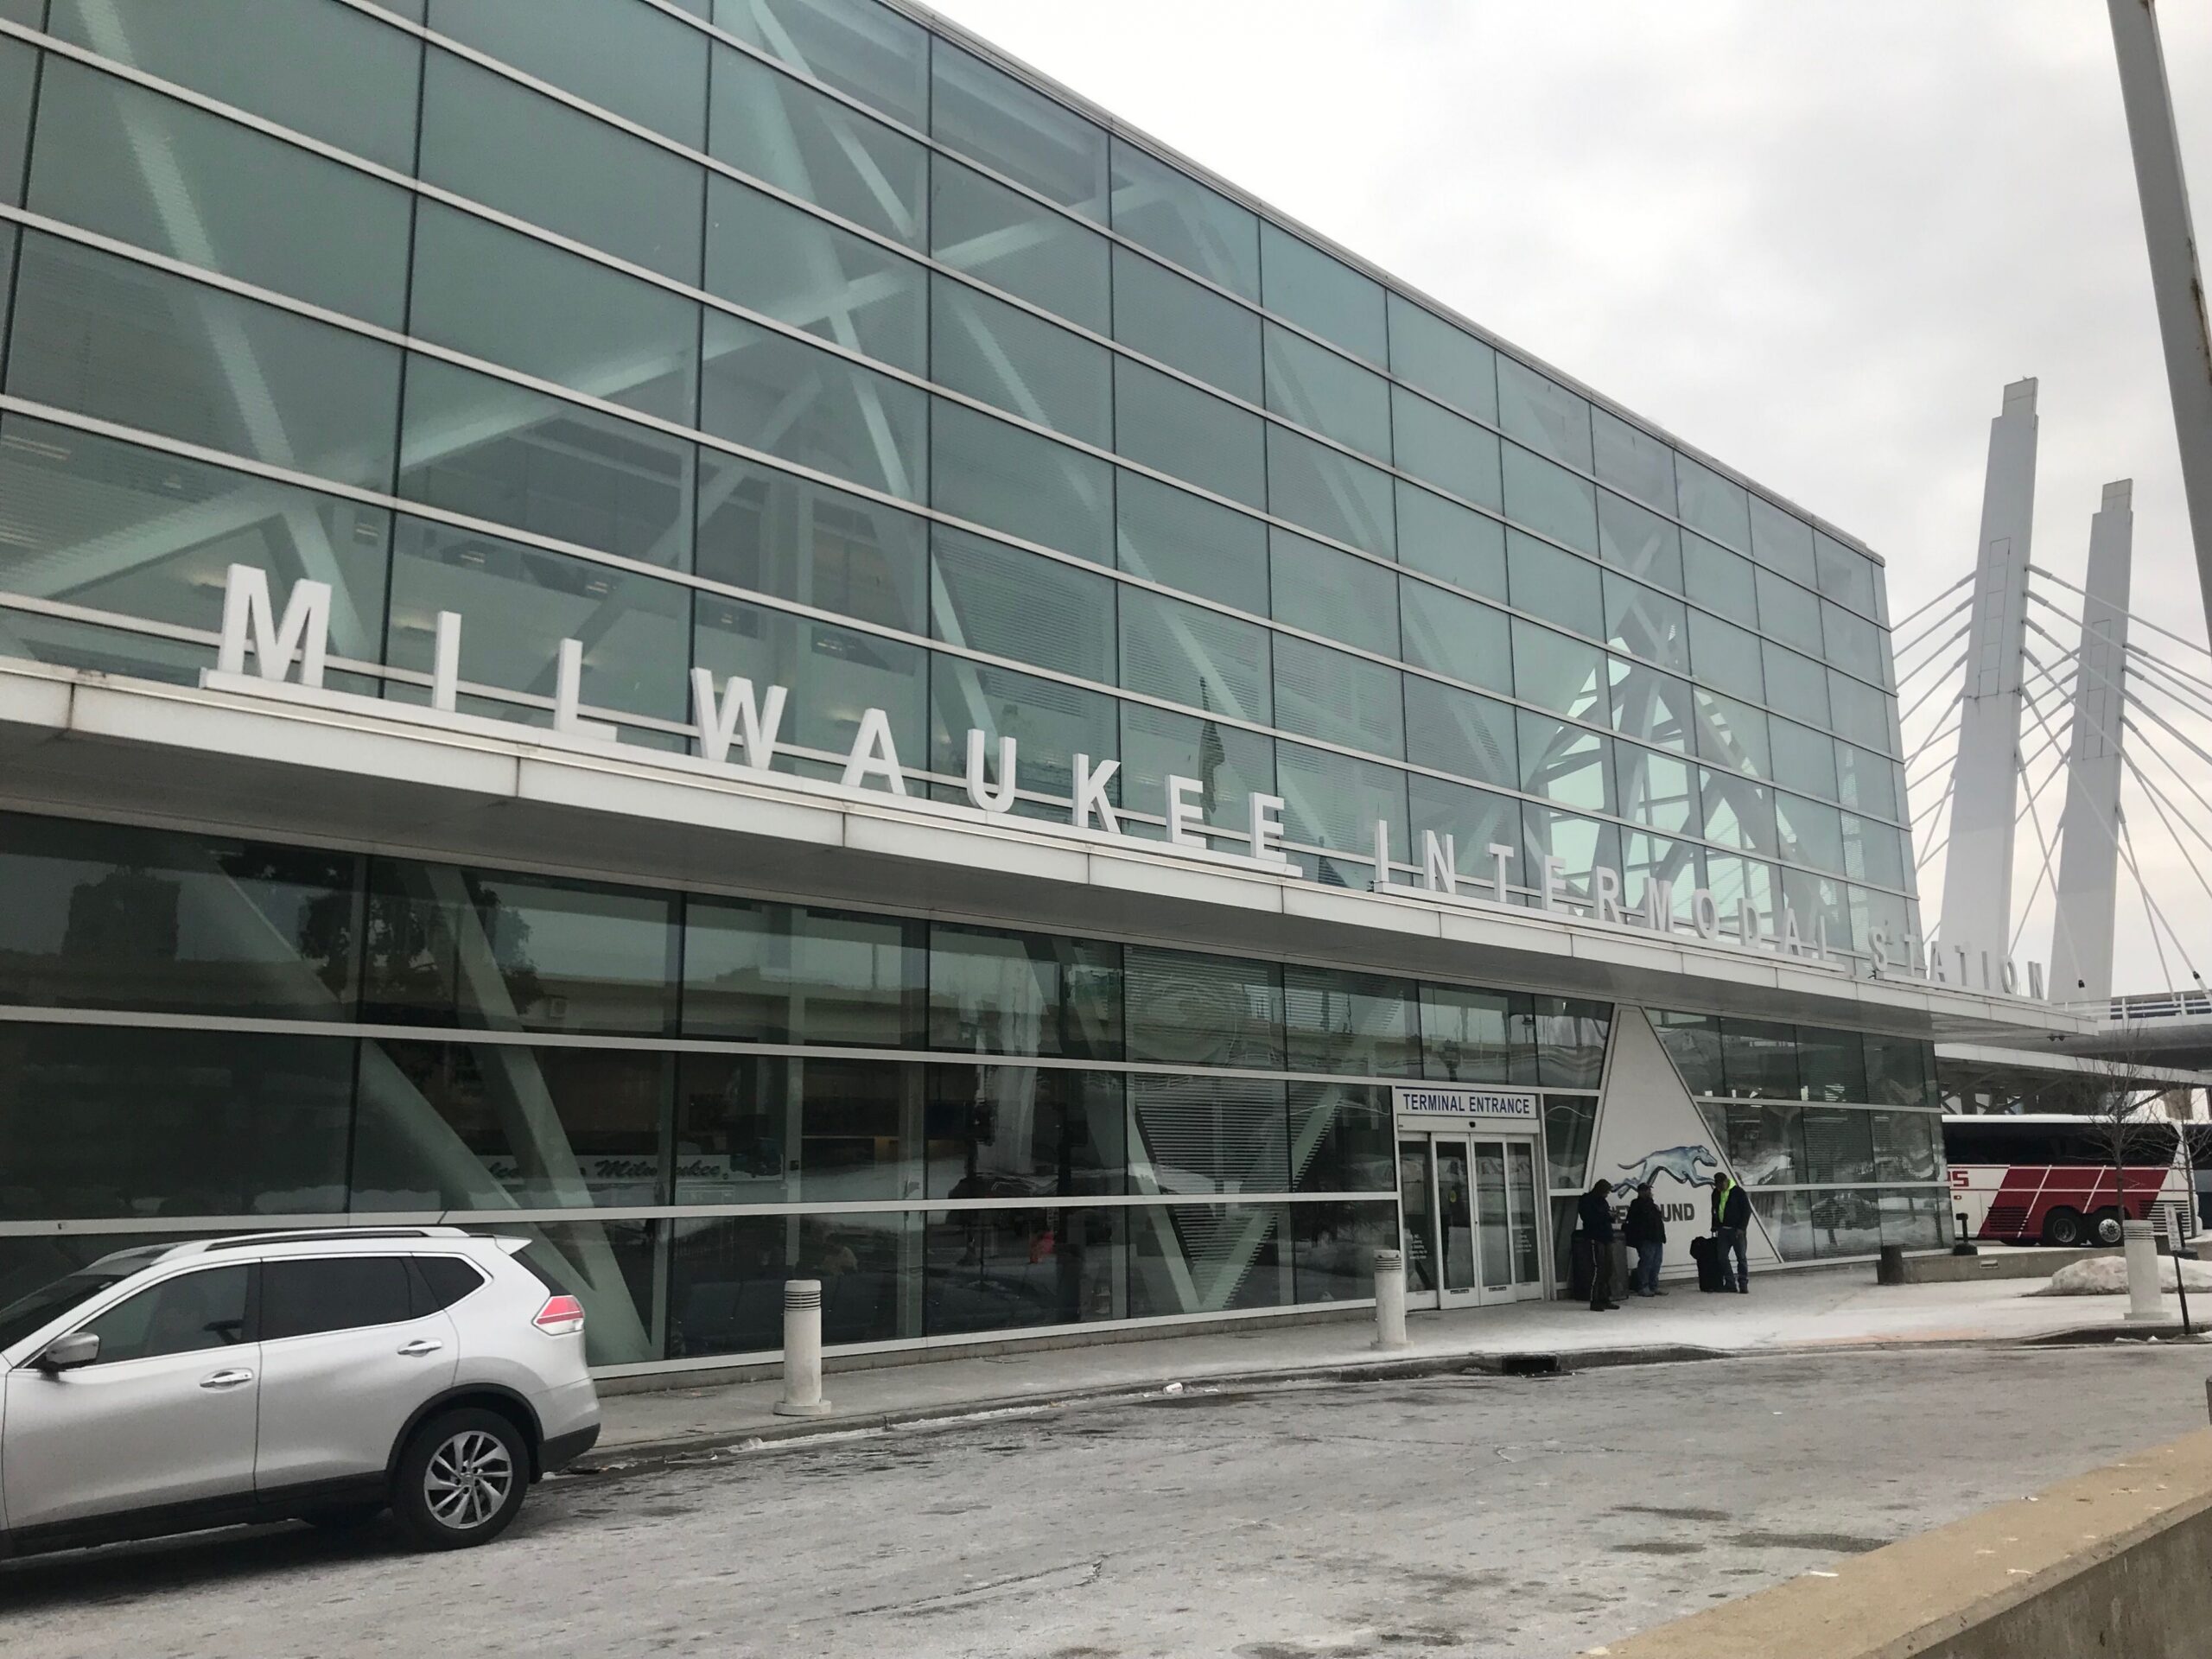 Milwaukee Intermodal Station, Amtrak